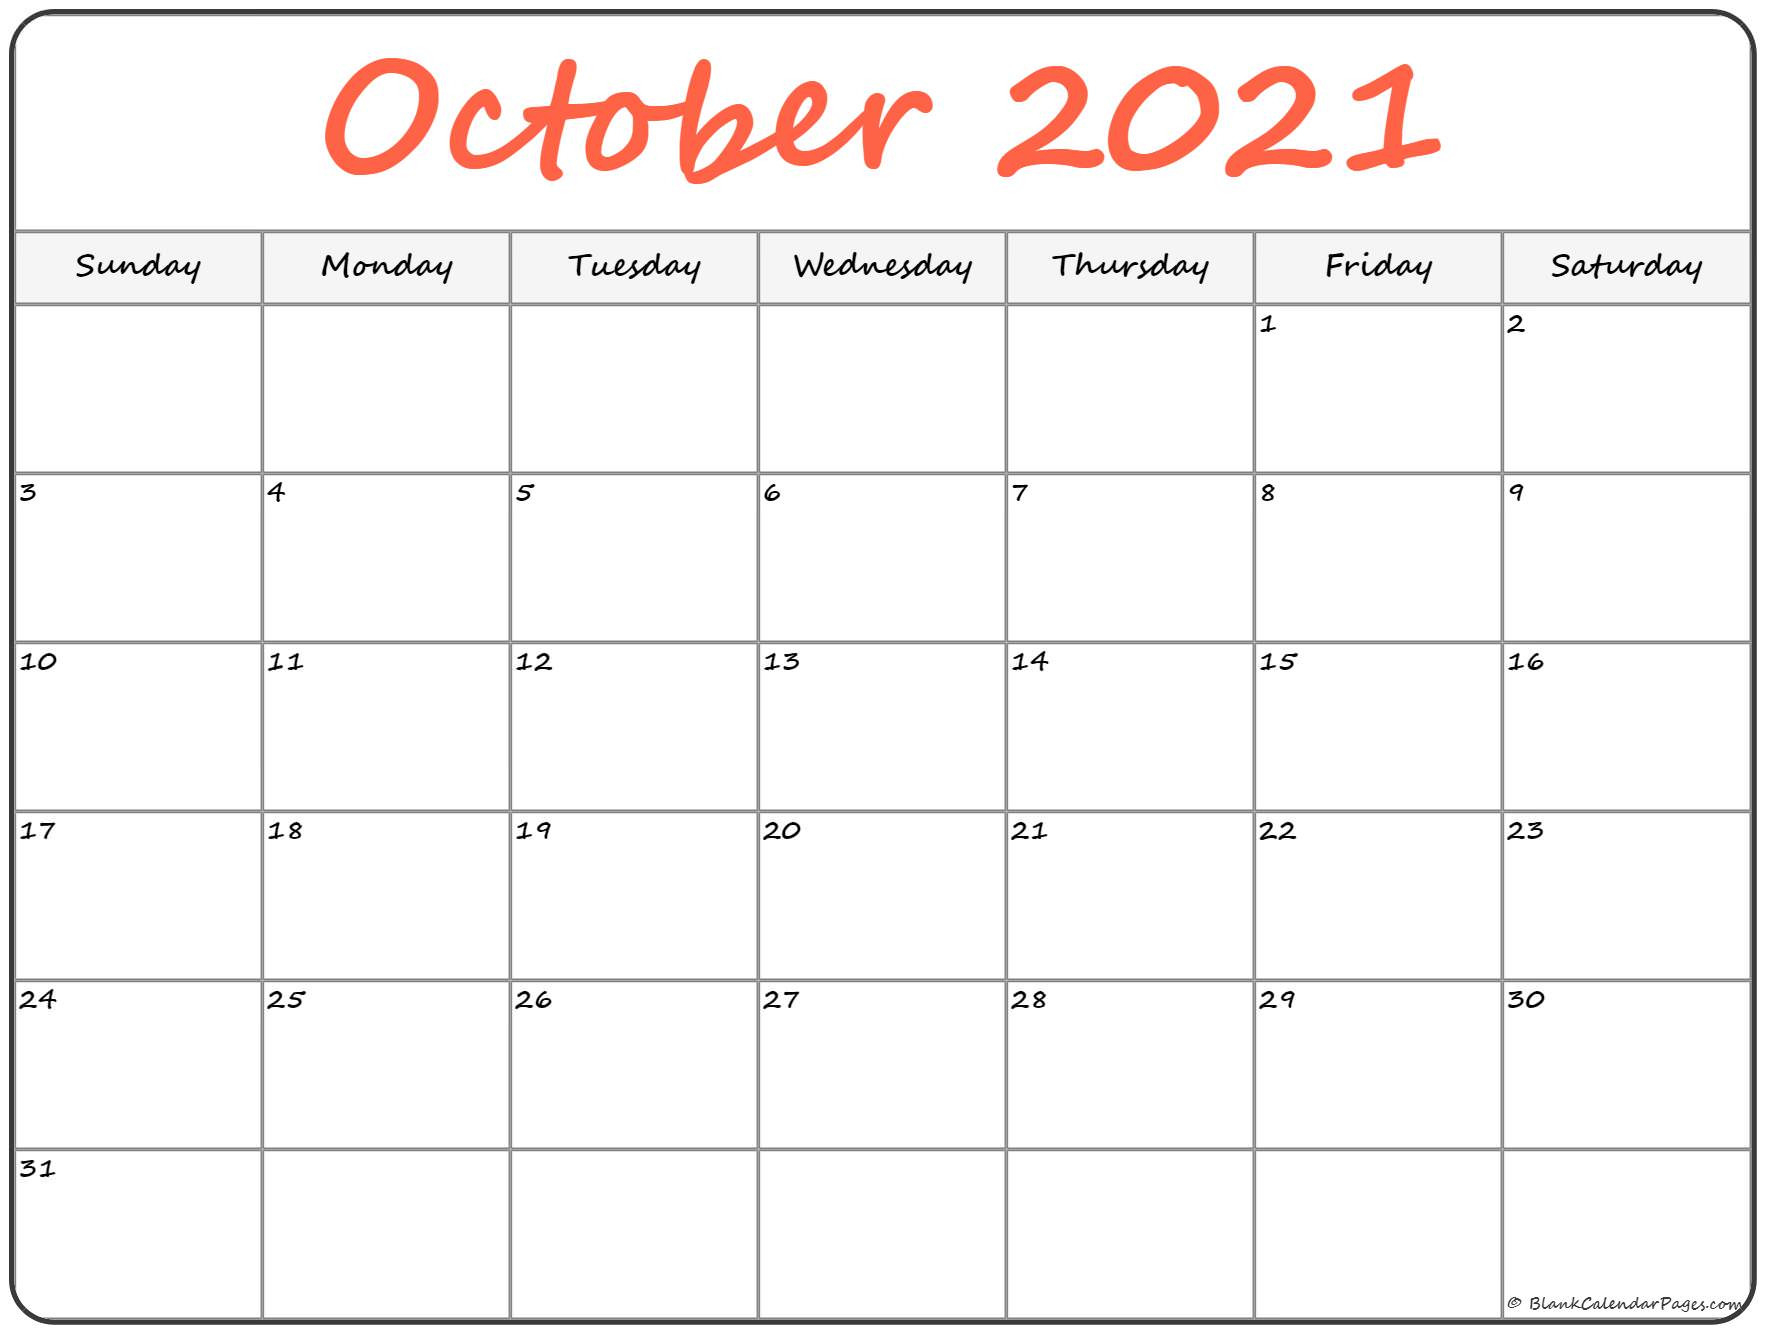 October 2021 Calendar | Free Printable Calendar Templates-Vertex Montly Calendar October 2021